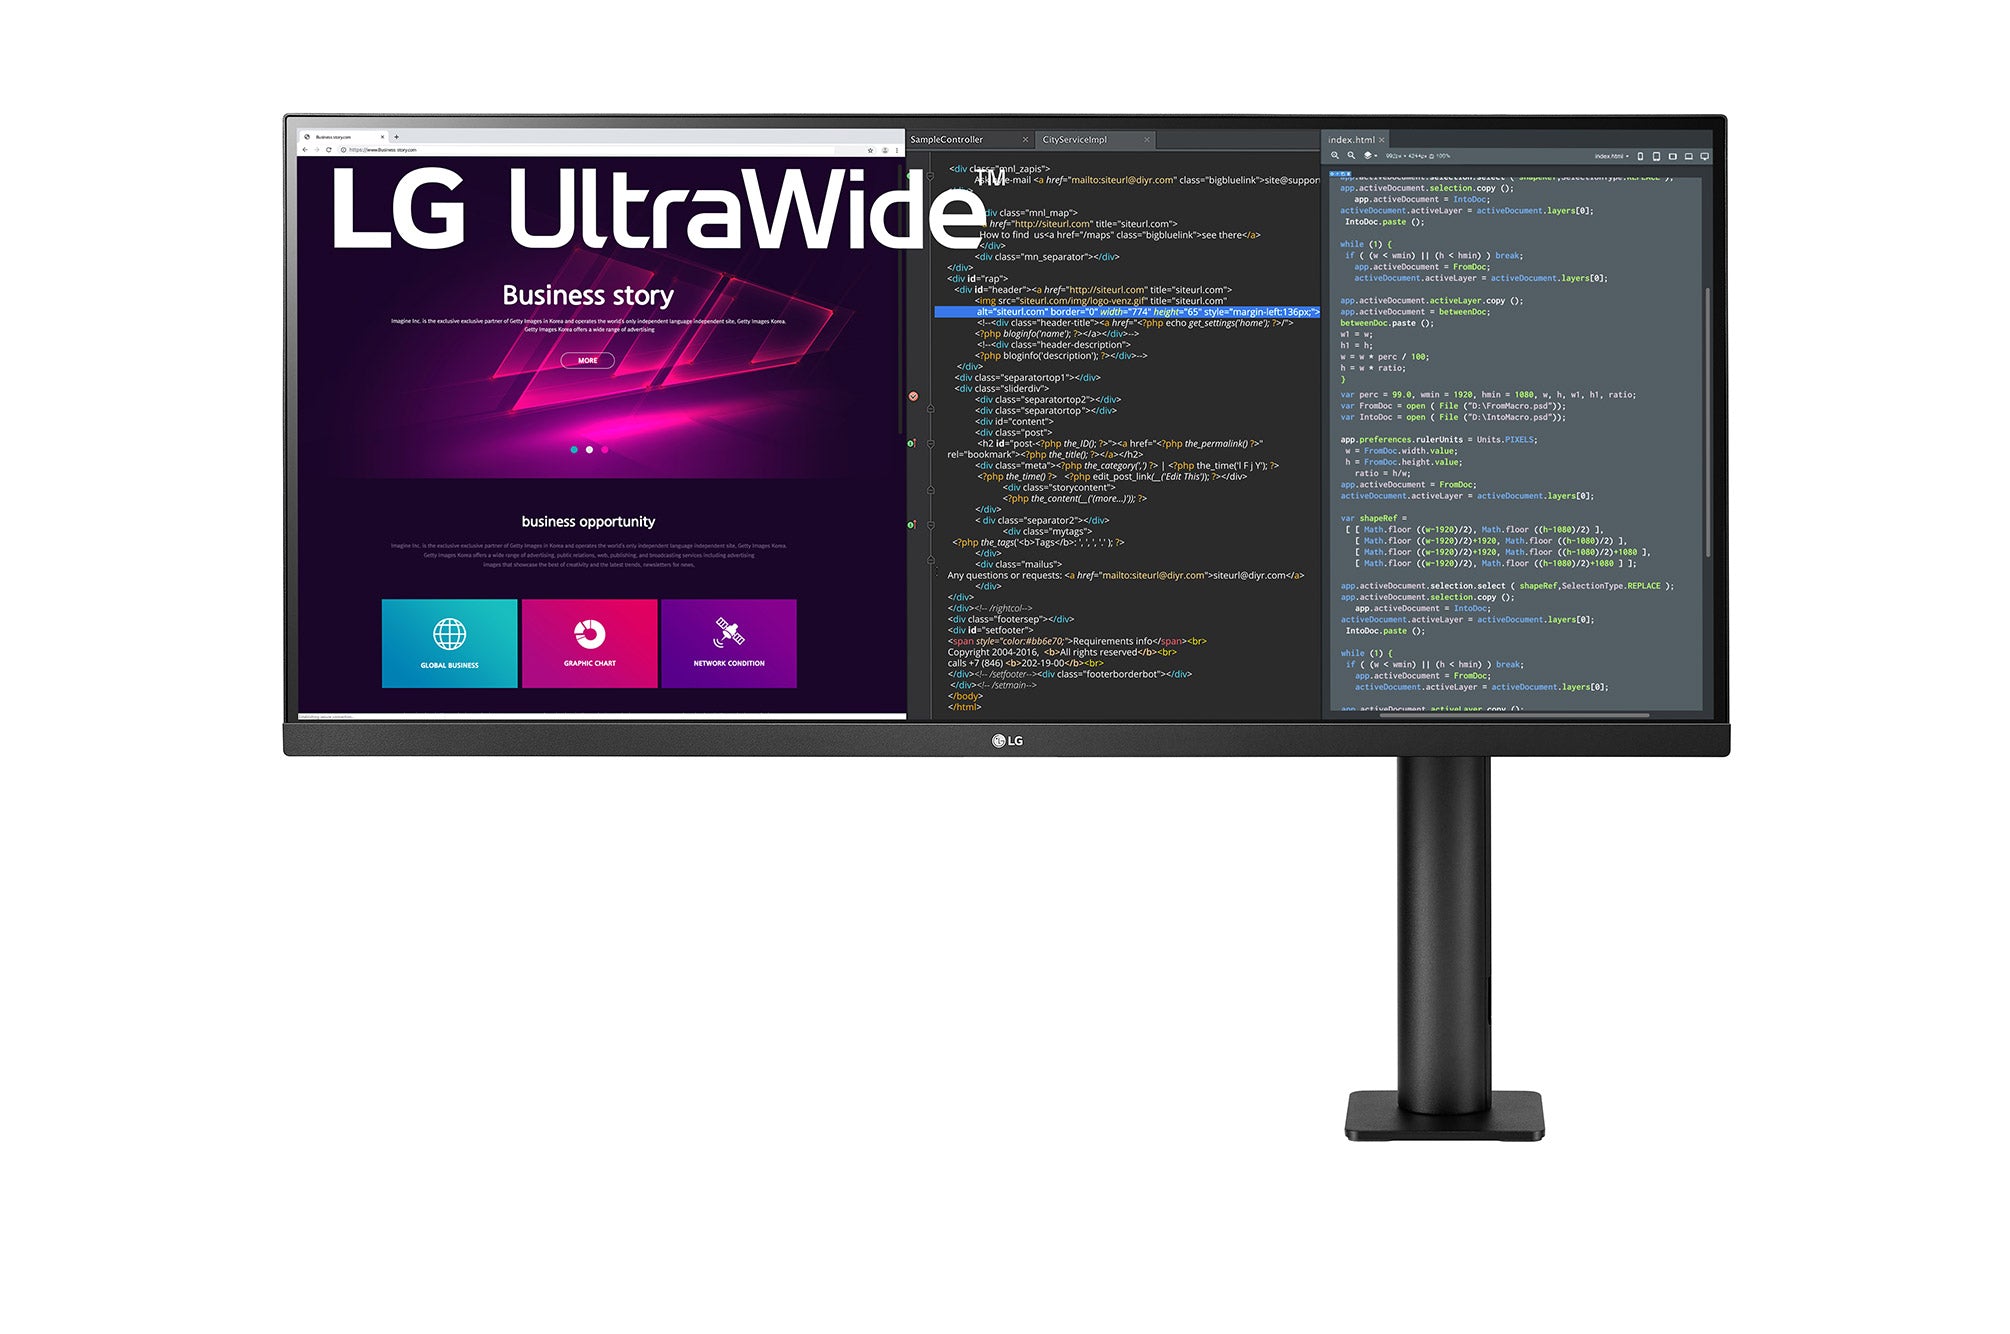 LG 34WN780 UltraWide Monitor / 34 inch / 3440 x 1440 inch / AMD FreeSync / Dynamic Action Sync / Black Stabilizer